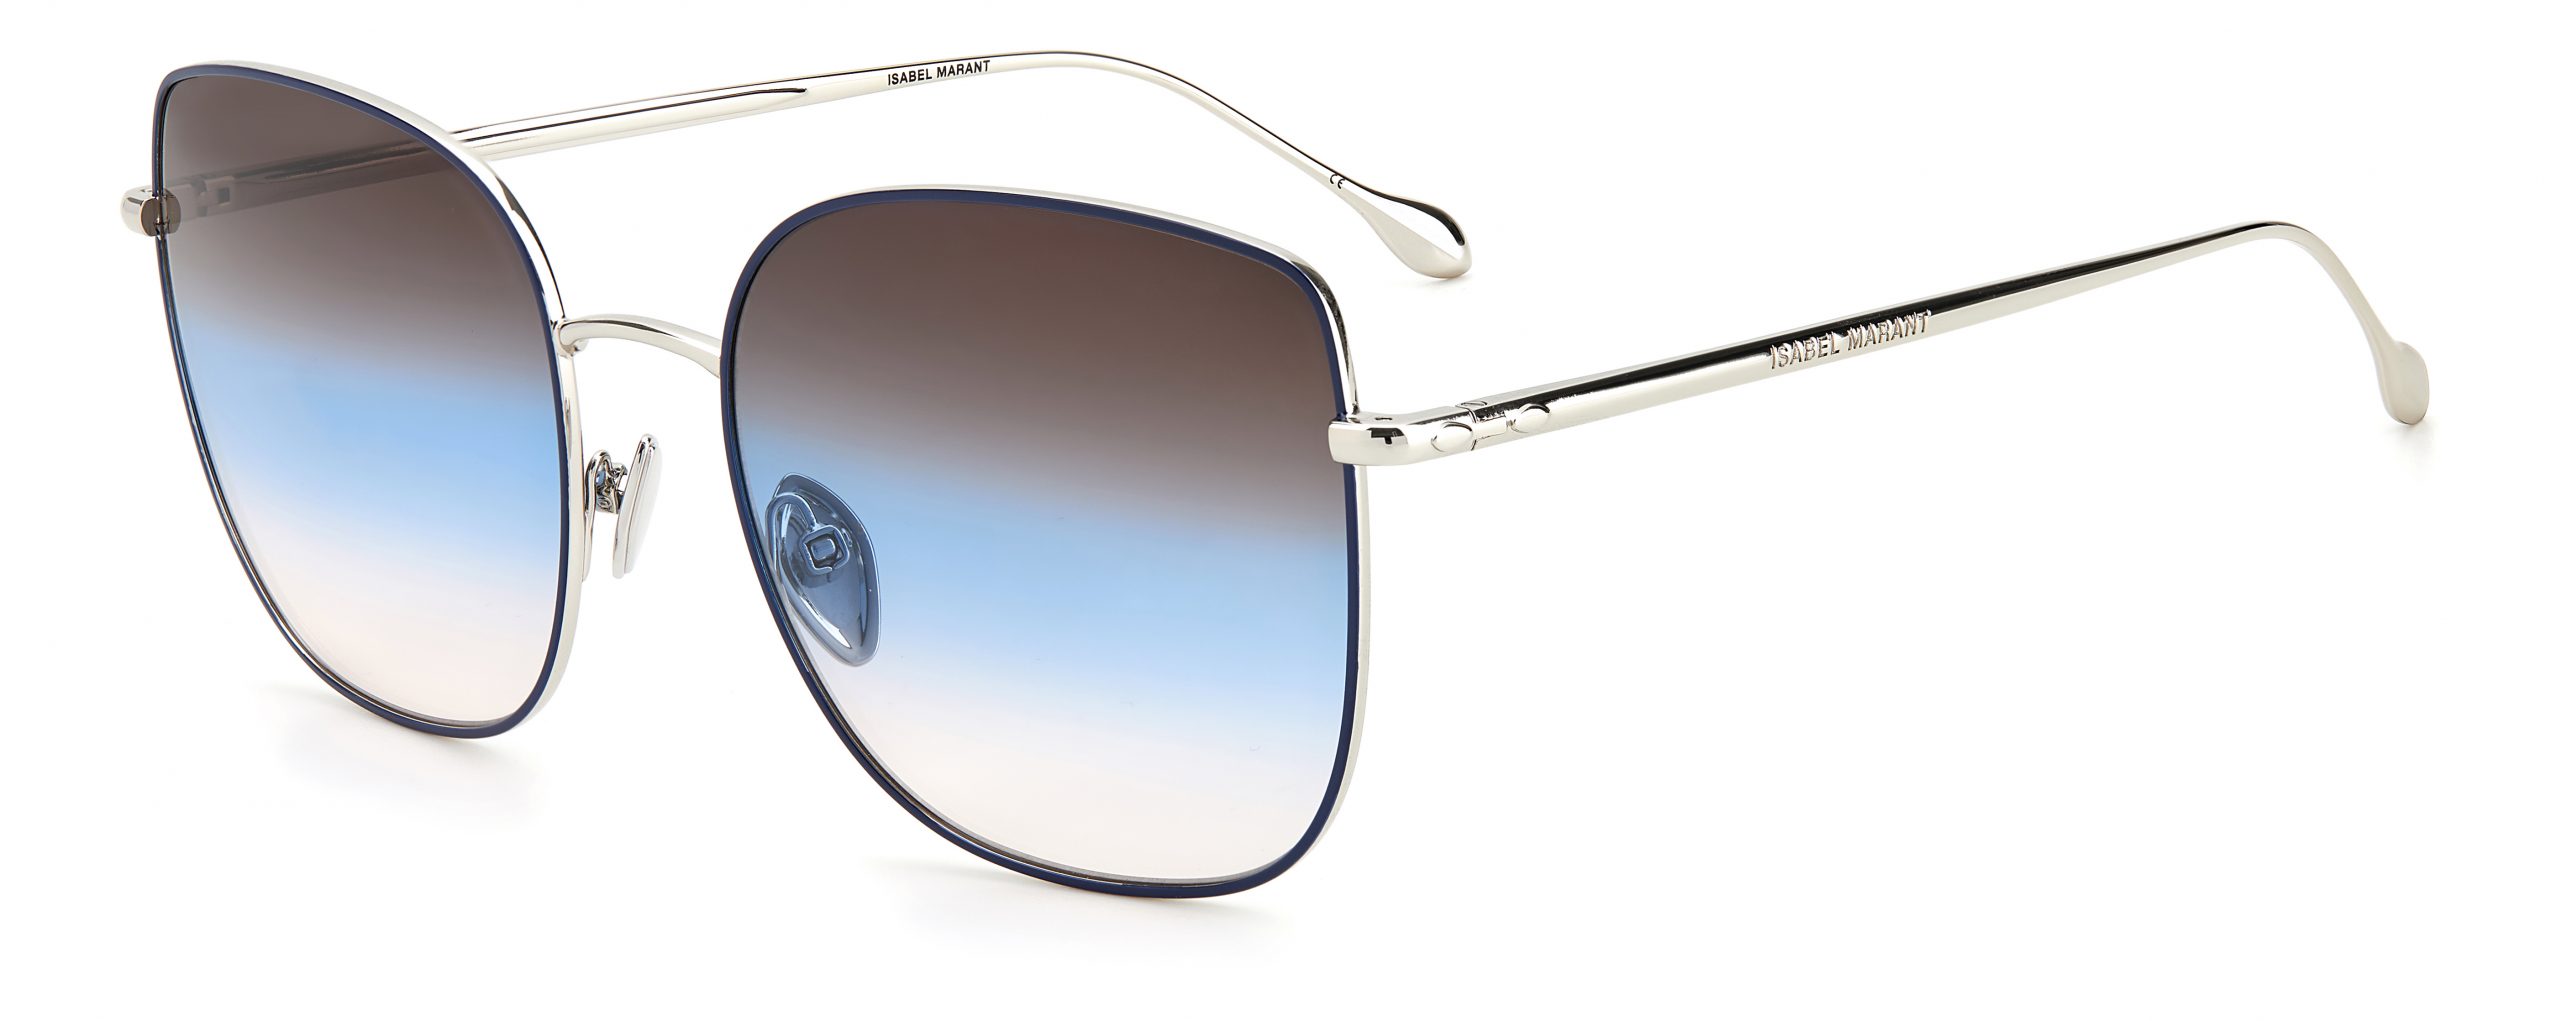 0014/S 58 98 ISABEL MARANT Sunglasses | George & Matilda Eyecare and Optometrist